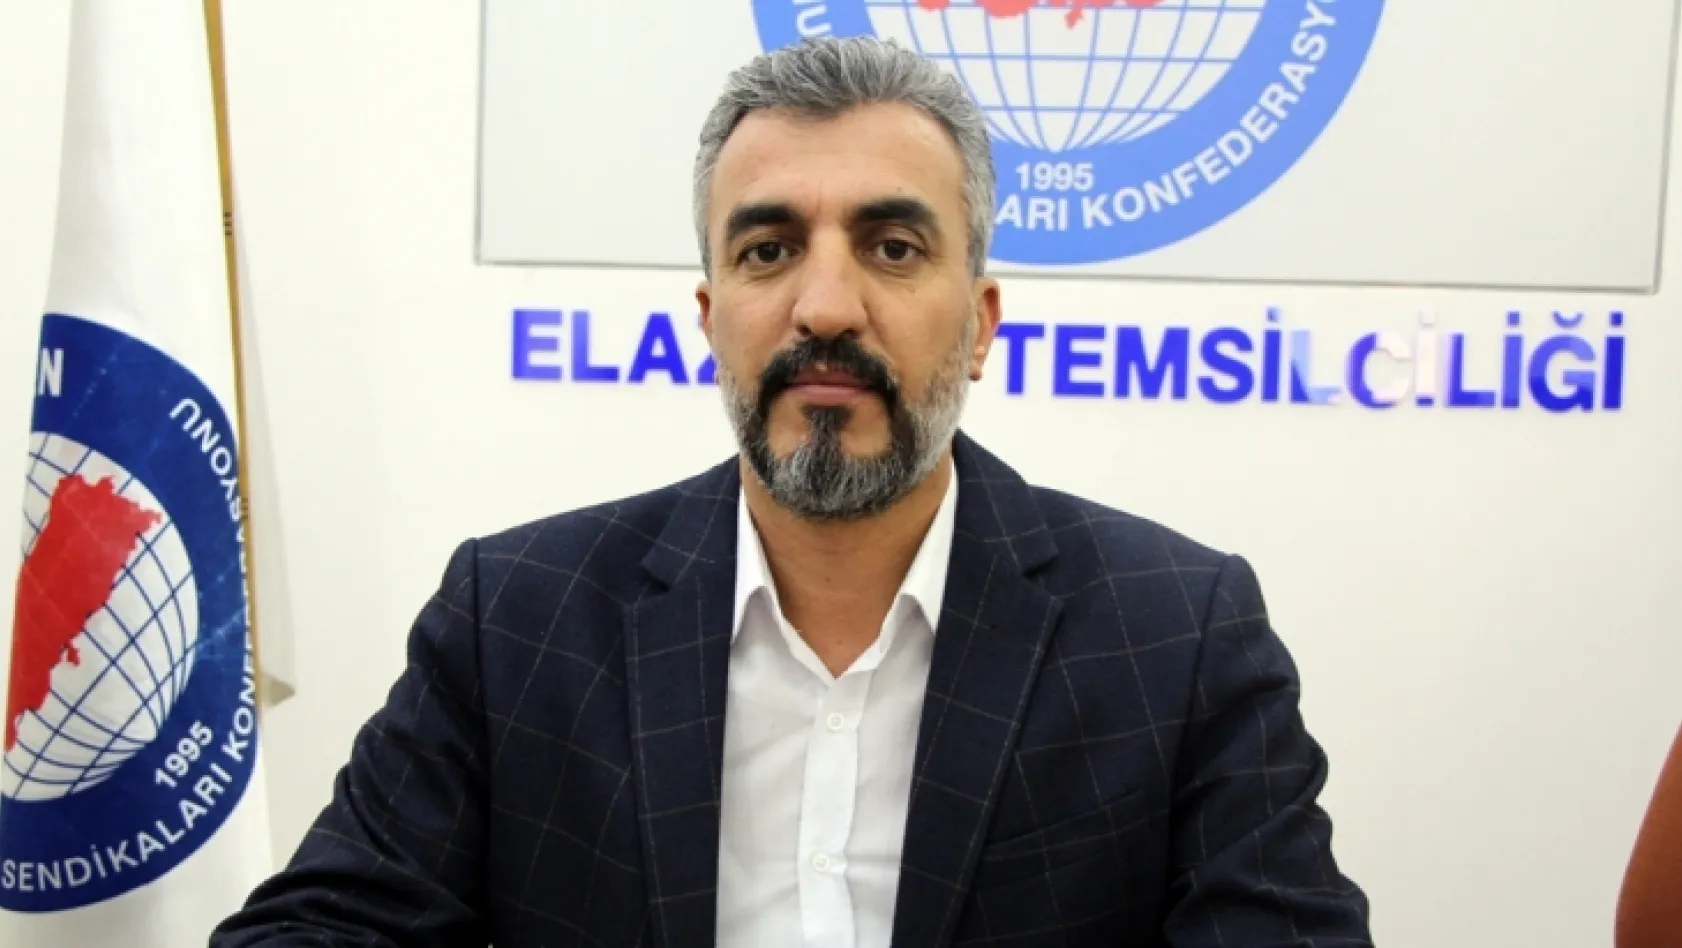 Elazığ'da Doğu Türkistan için miting yapılacak